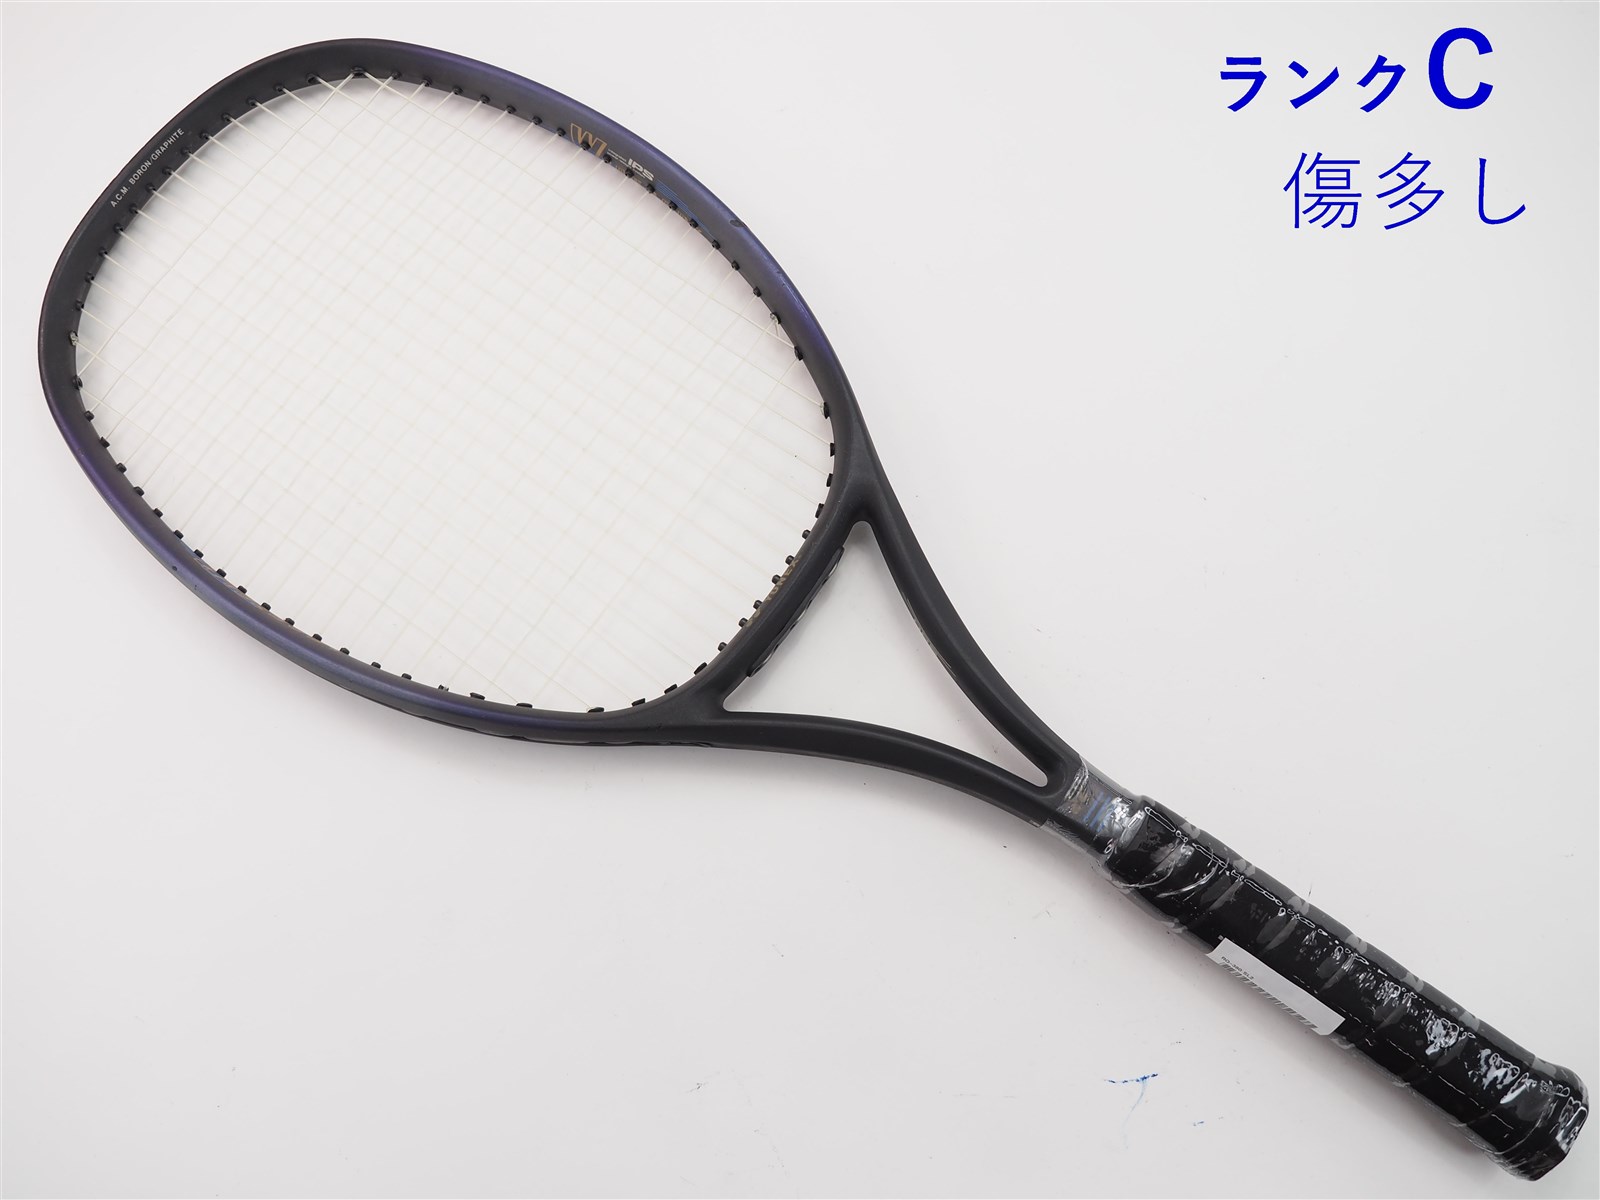 【中古】ヨネックス RQ-380YONEX RQ-380(SL2)【中古 テニスラケット】の通販・販売| ヨネックス| テニスサポートセンターへ